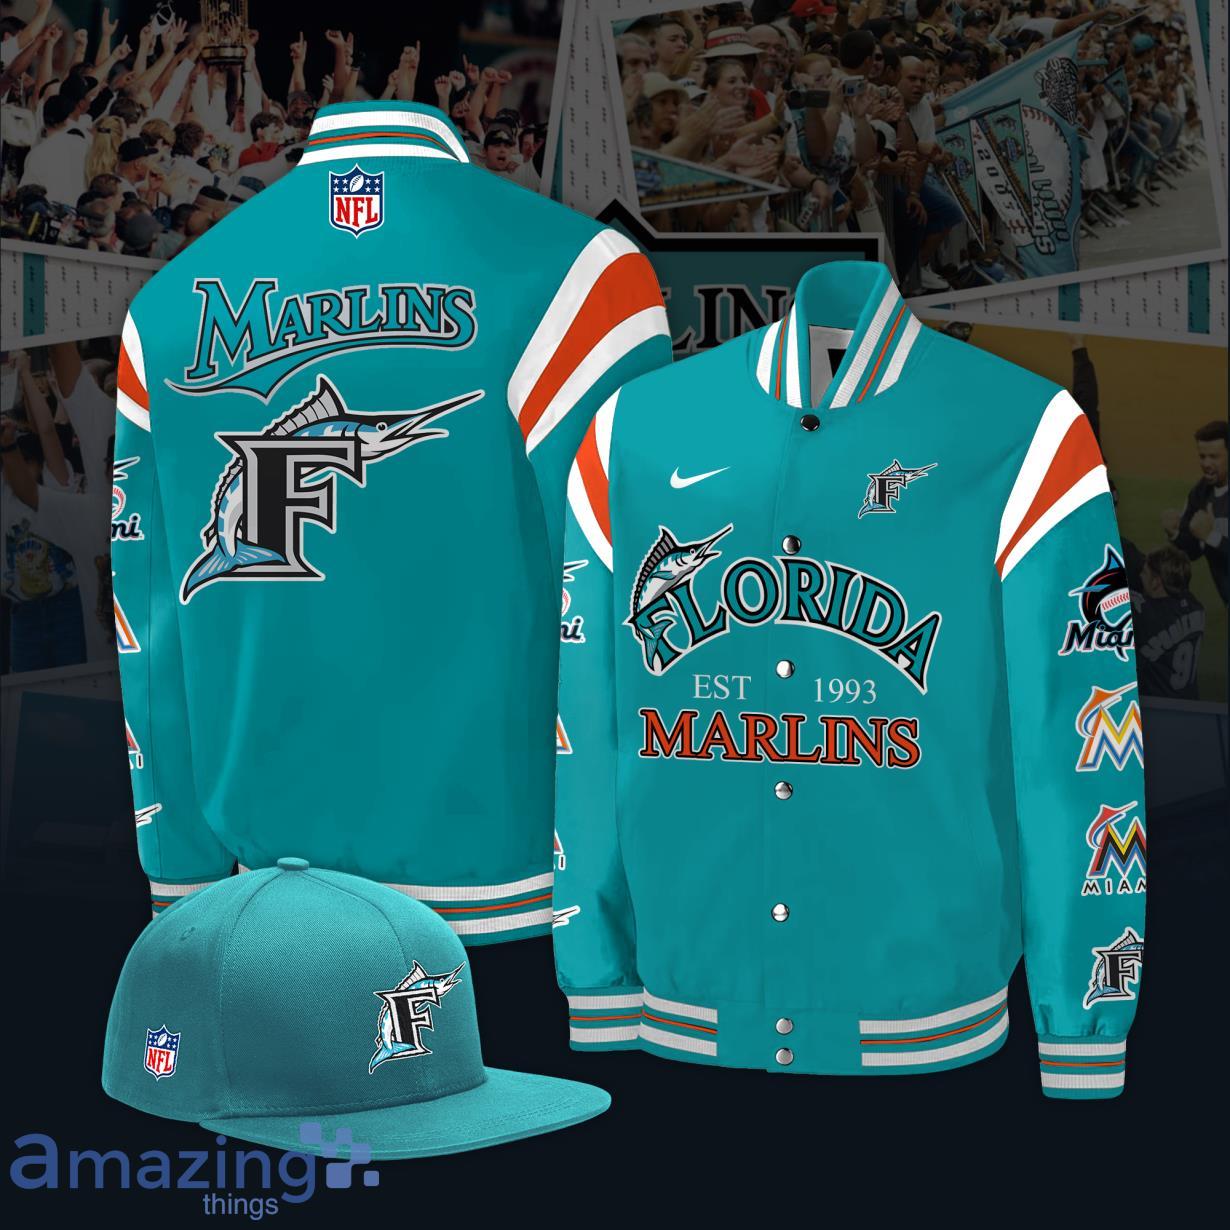 Florida Marlins Baseball Jacket Product Photo 1